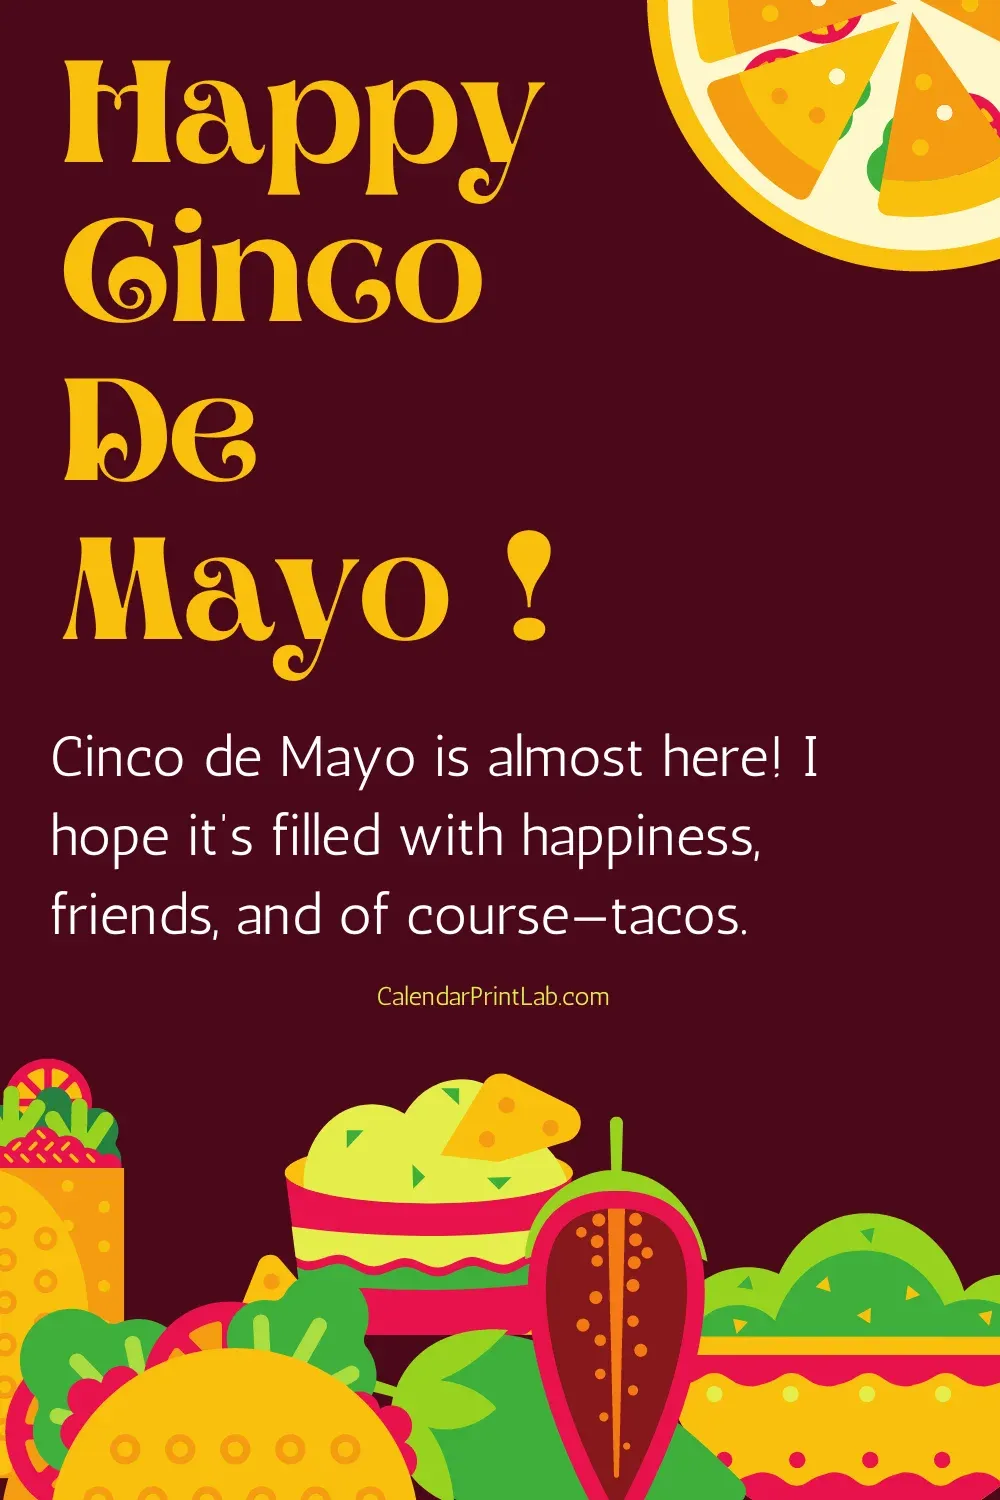 Happy Cinco de Mayo Wishes Image